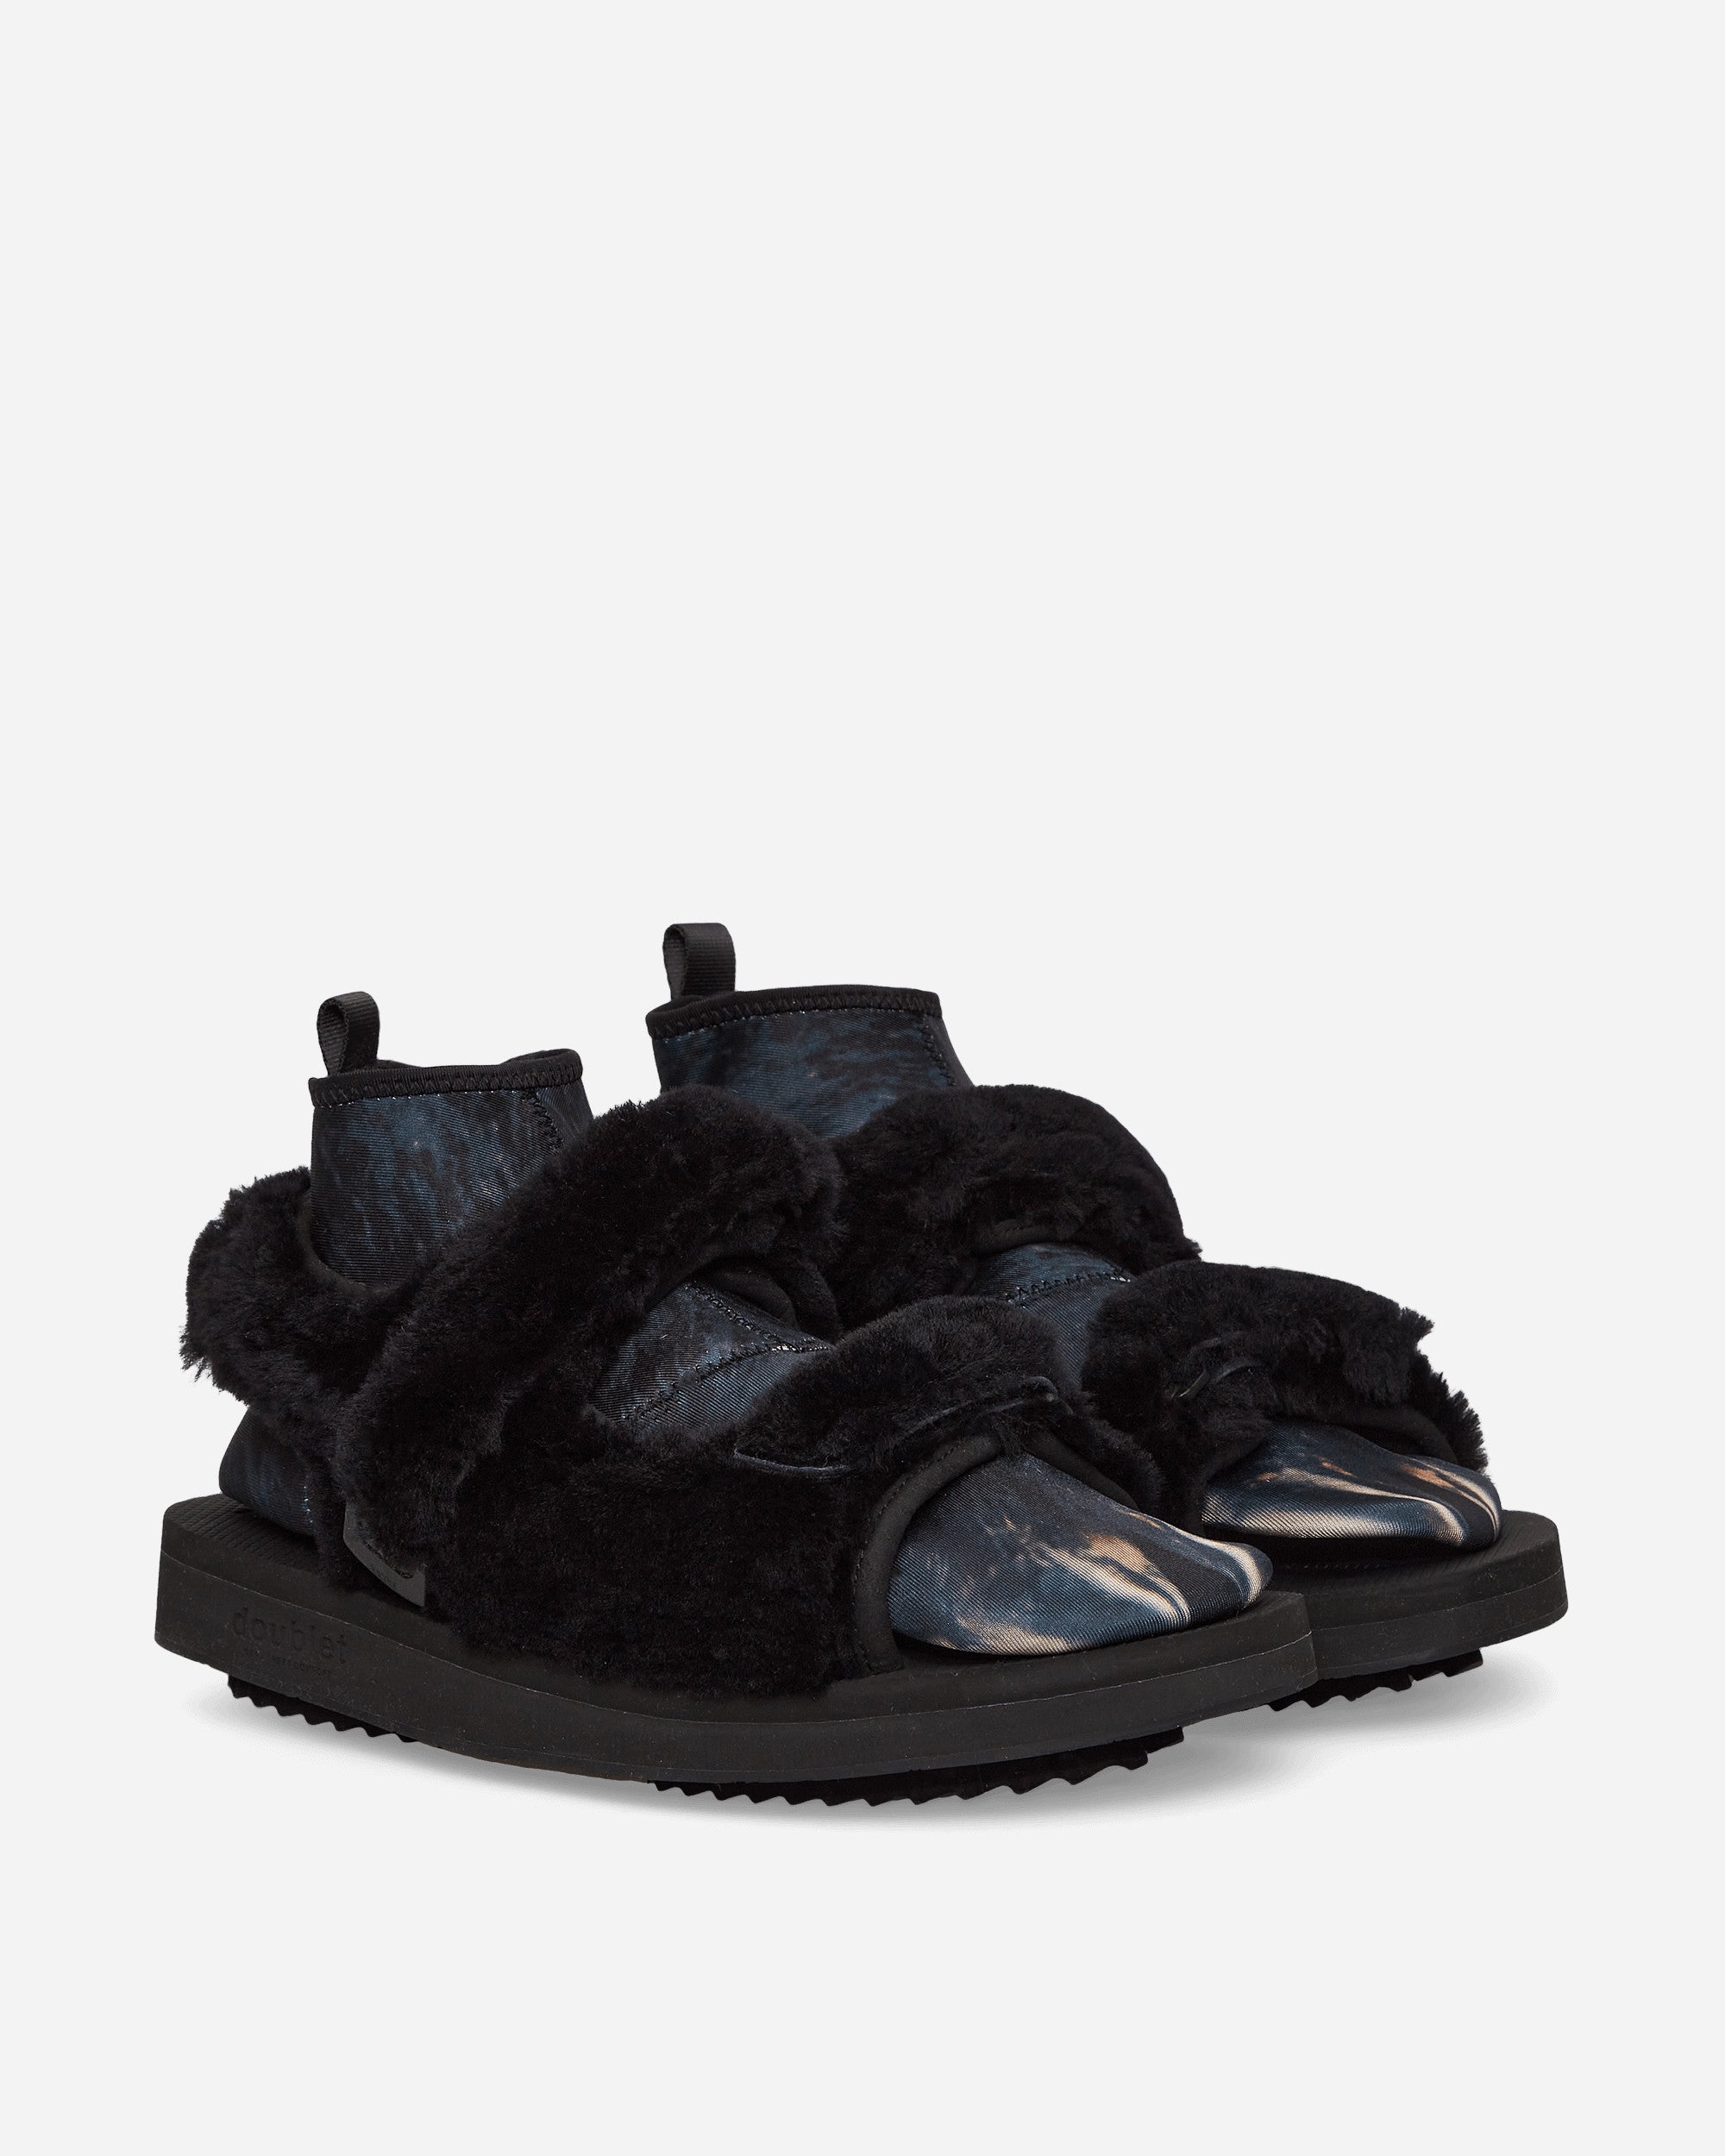 Suicoke WAS 5abDB F Black Sandals and Slides Sandal OG0855abDBF F